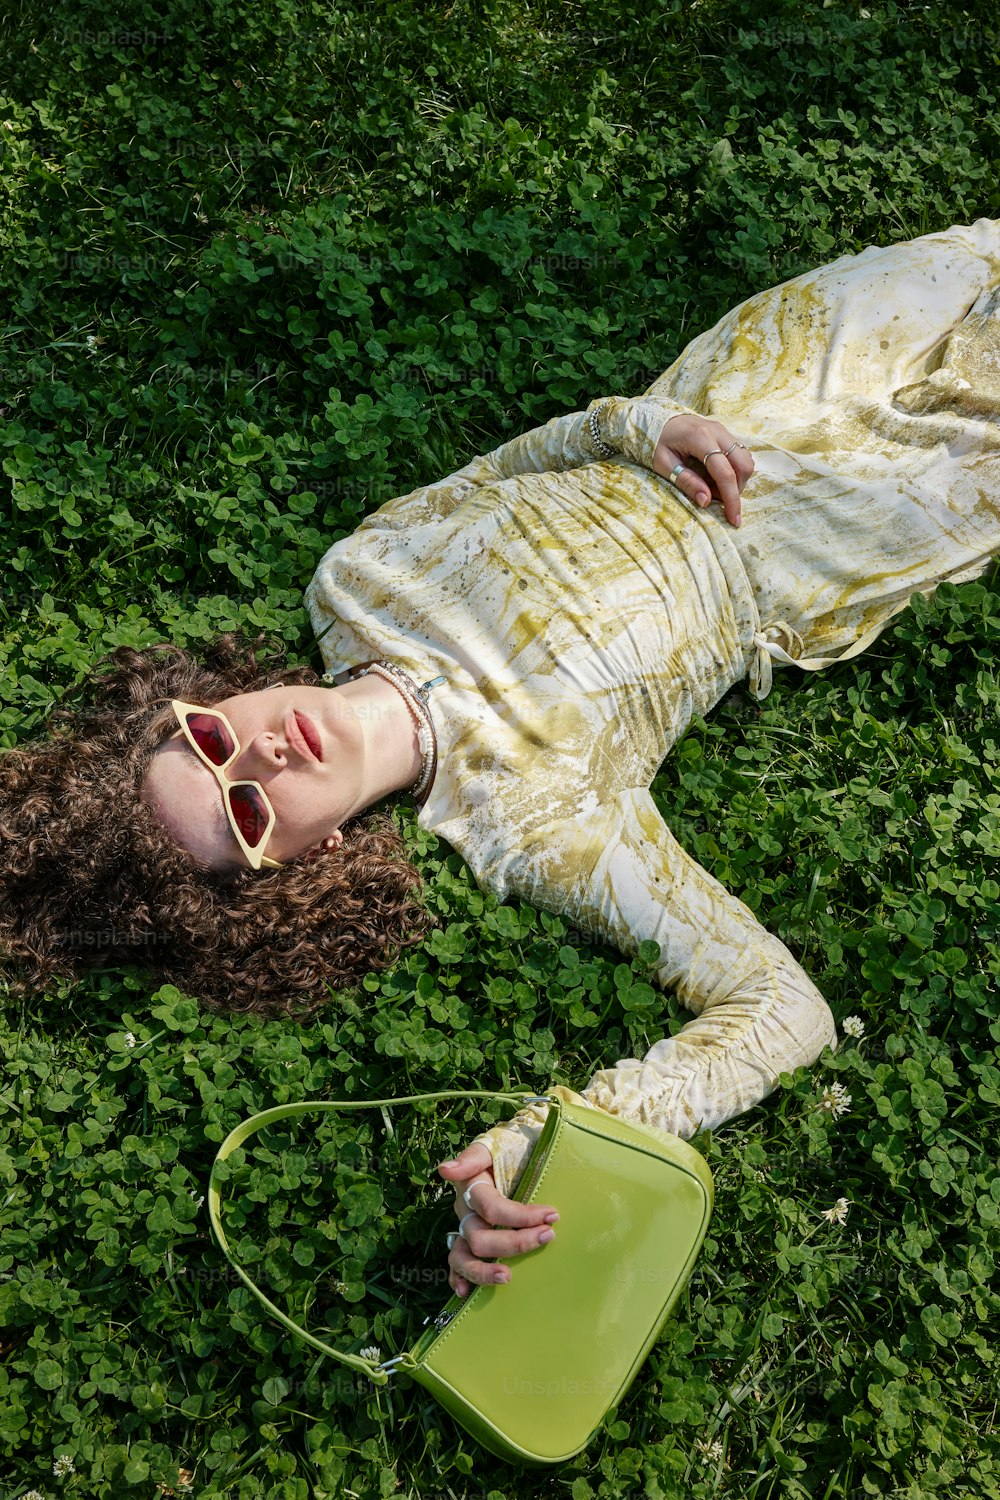 녹색 지갑을 들고 땅에 누워 있는 여자